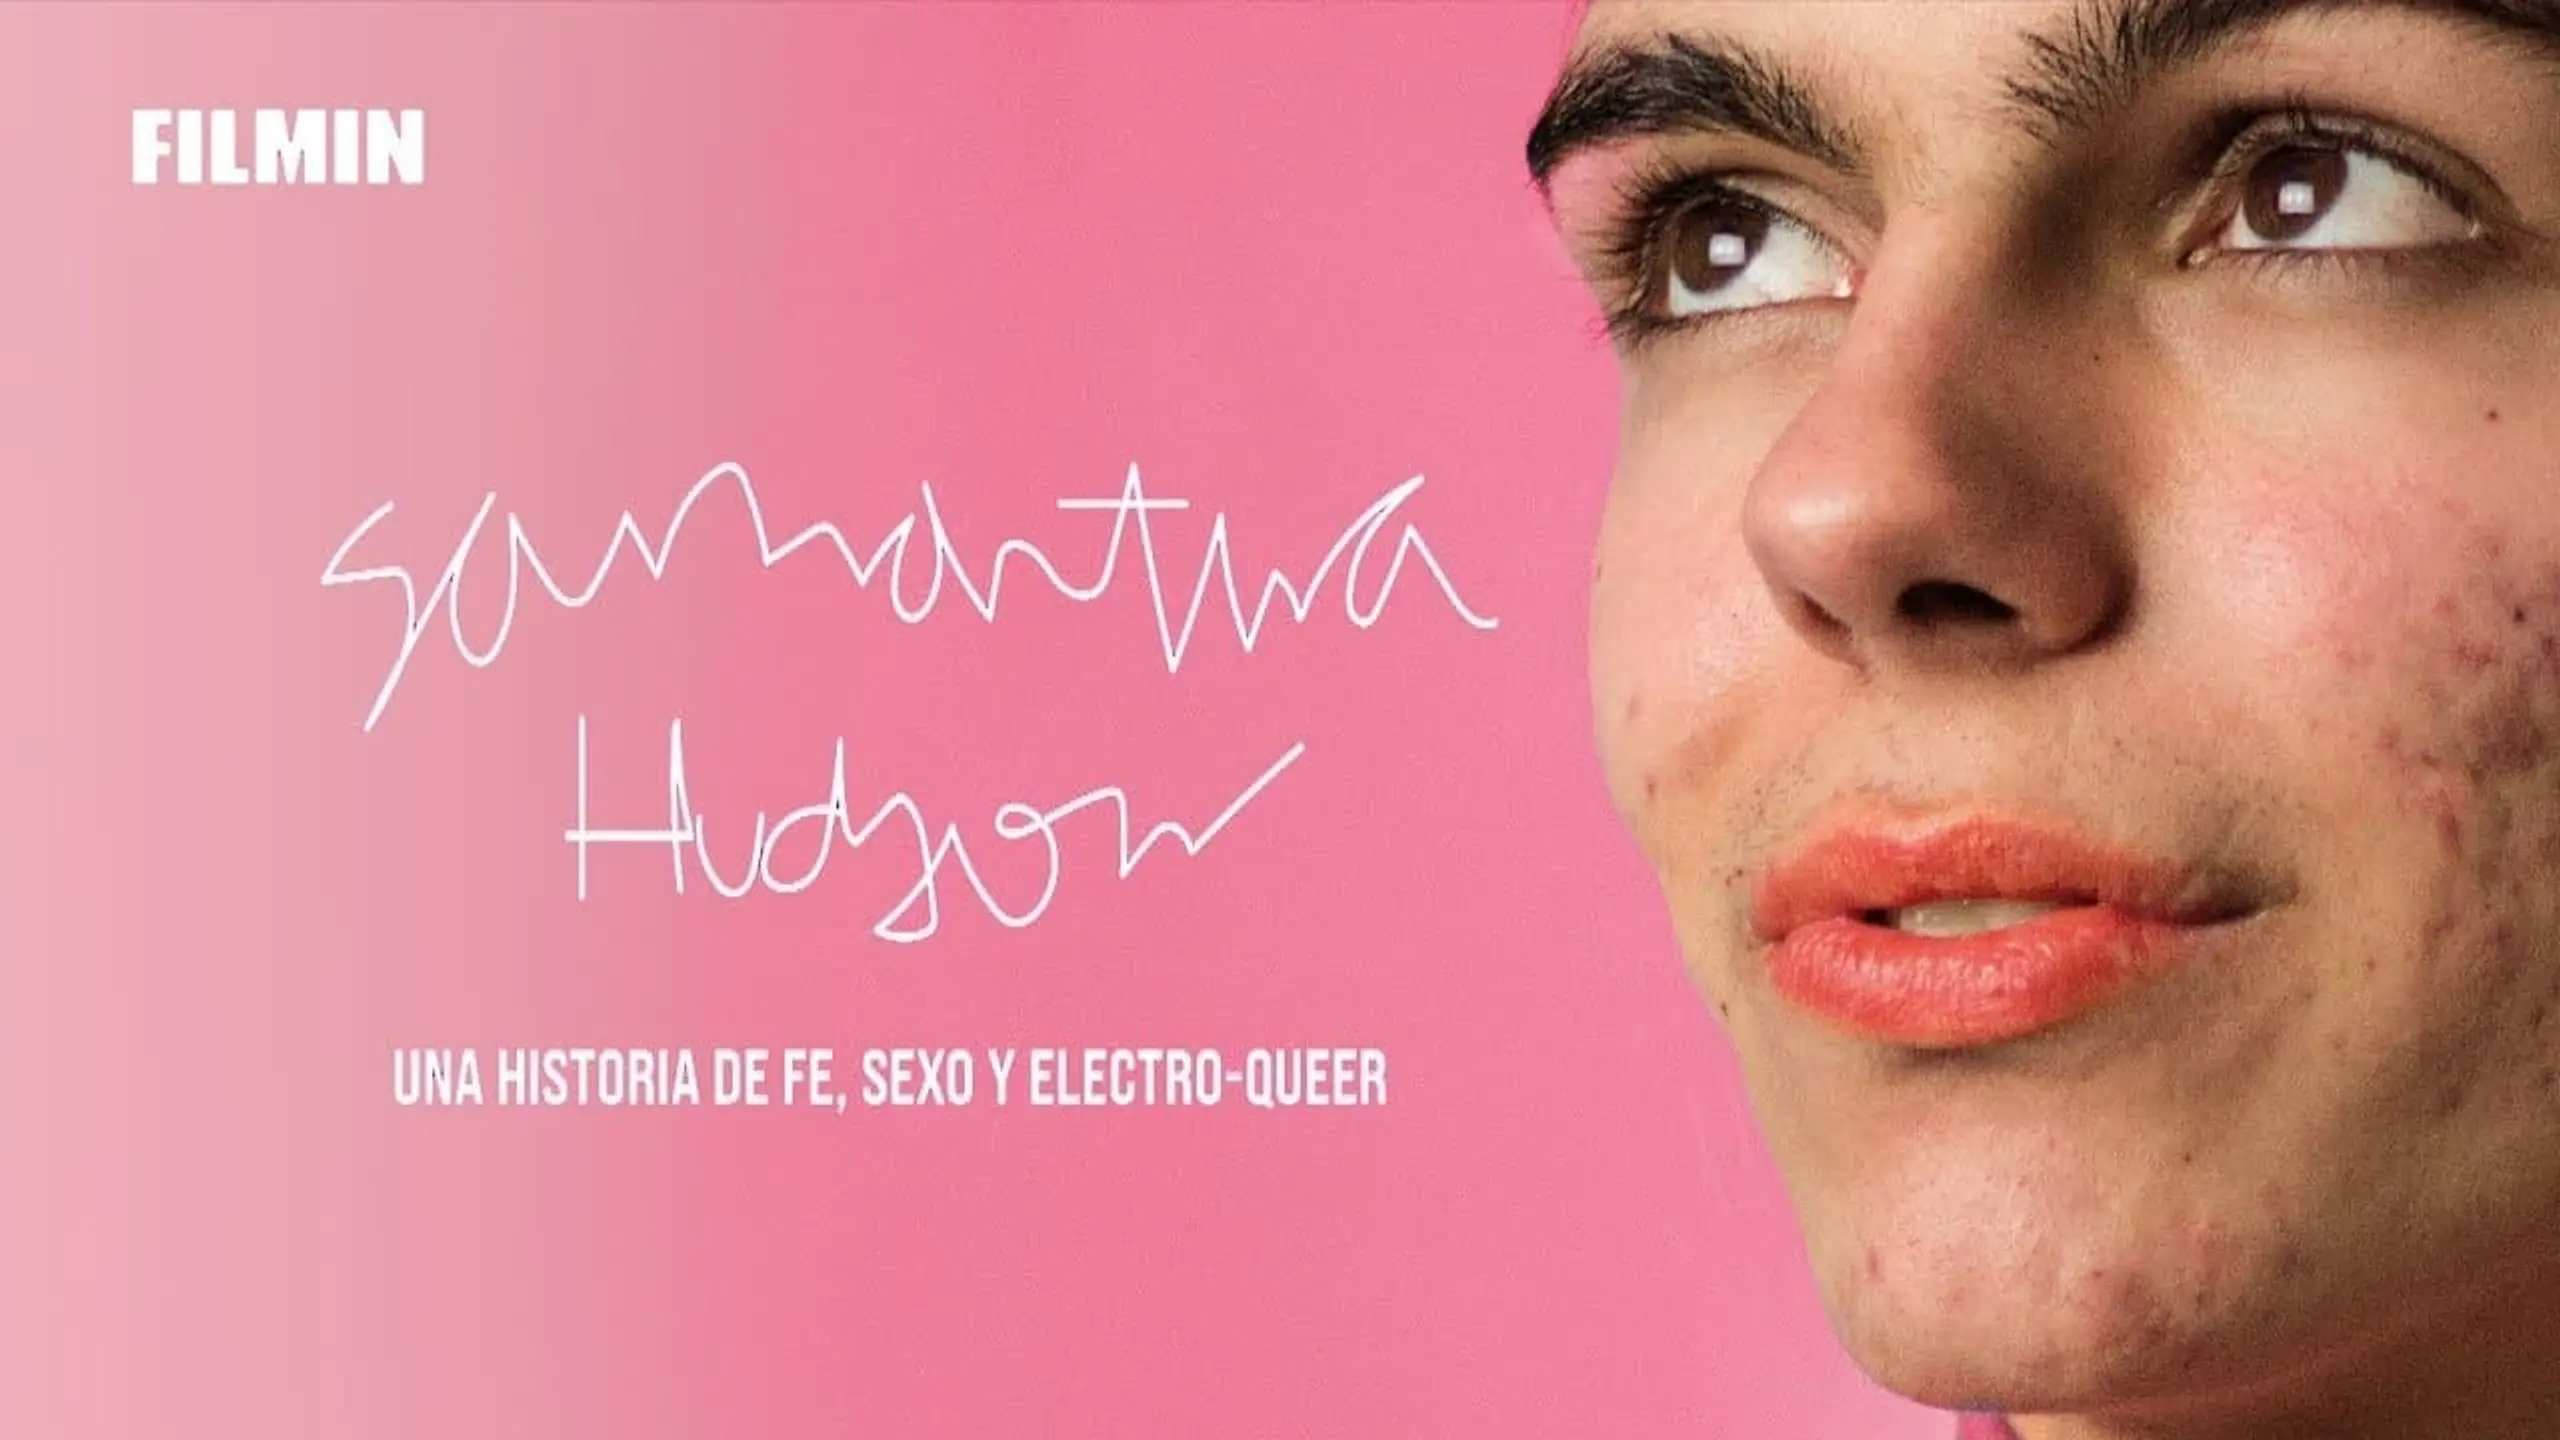 Samantha Hudson, una historia de fe, sexo y electro-queer